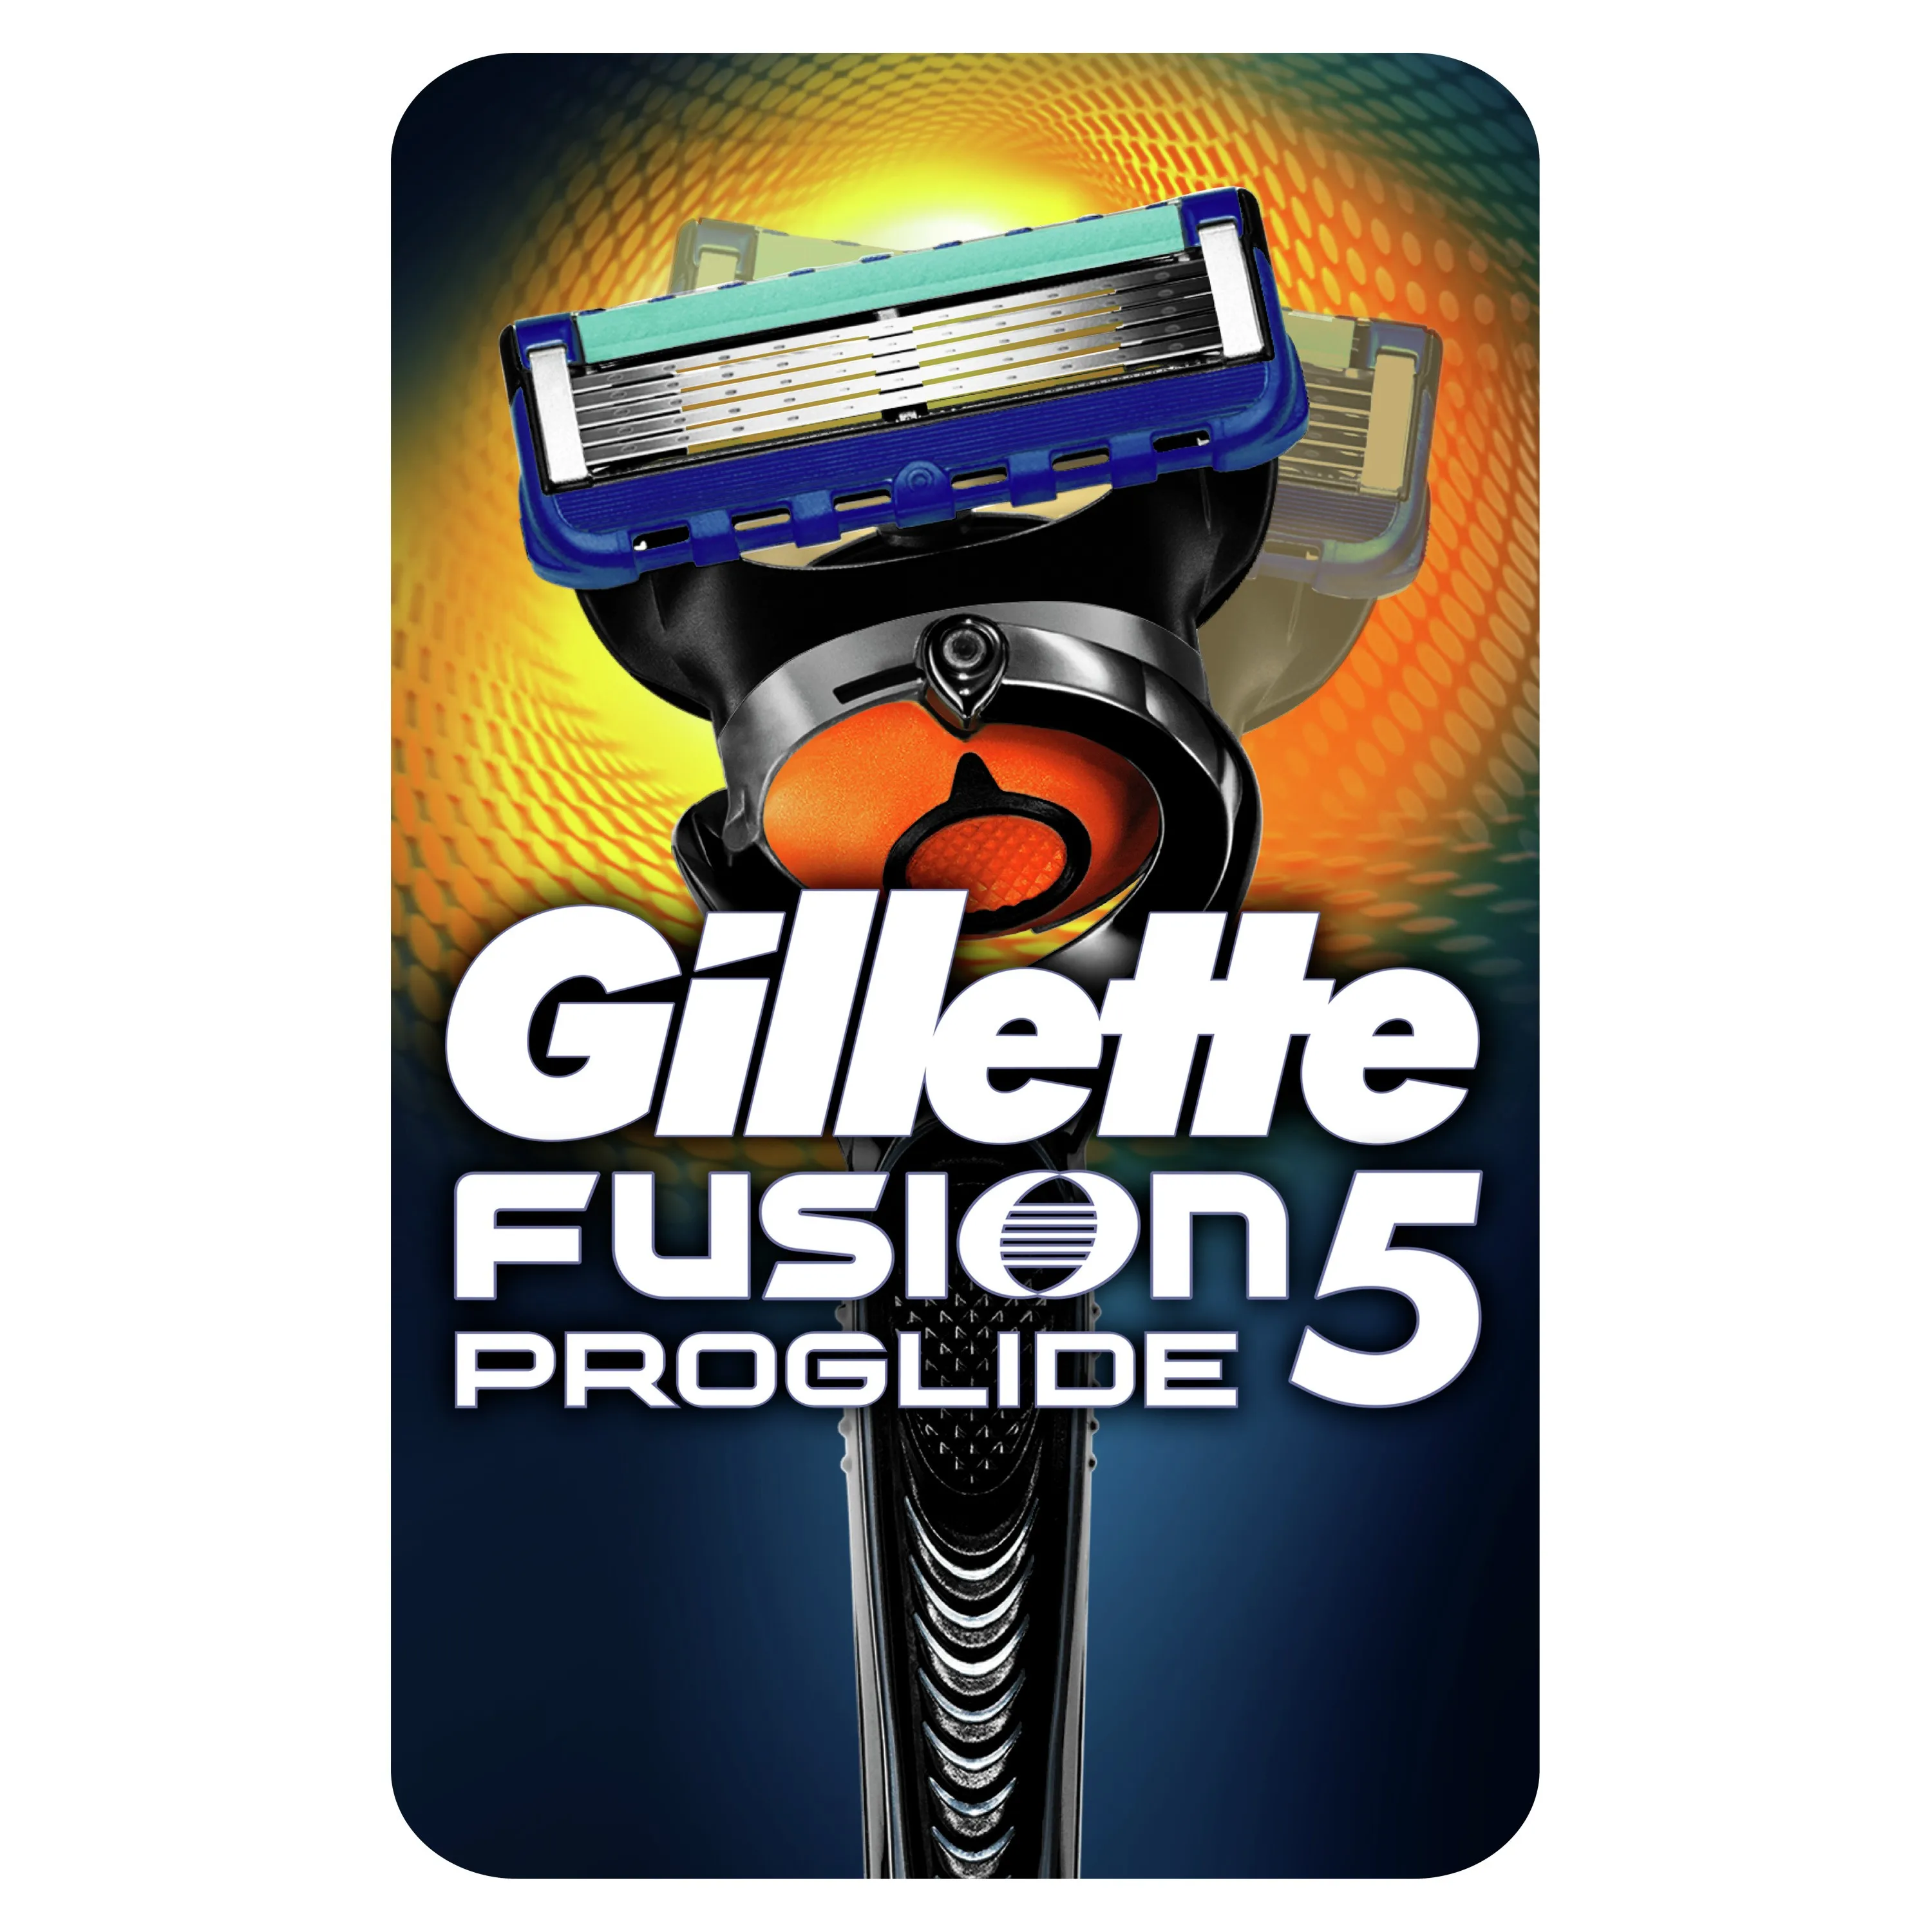 823.75руб. |Мужская бритва Gillette Fusion 5 ProGlide с 1 сменной кассетой|Бритва| |  - AliExpress